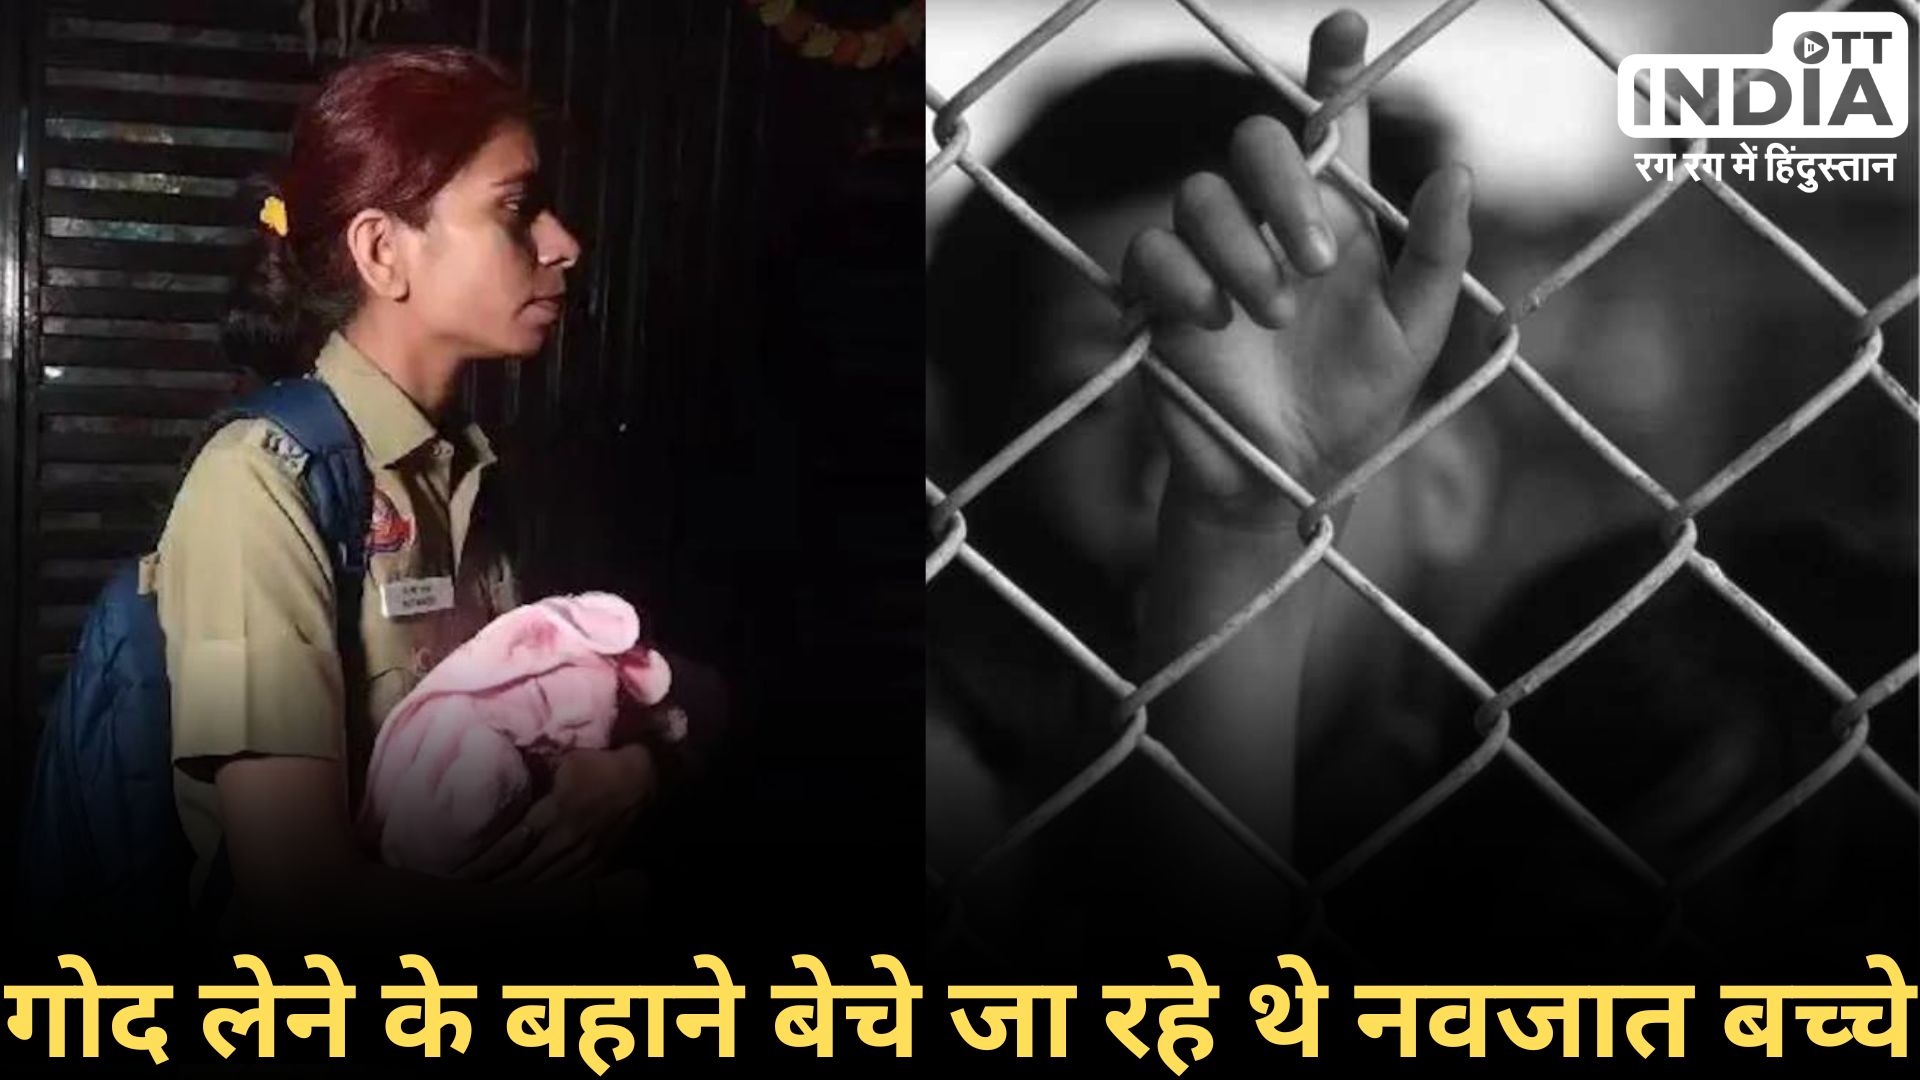 Delhi Child Trafficking: नवजात बच्चों के भी लग रहे हैं दाम… दिल्ली बच्चों की तस्करी मामले में 36 घंटे का नवजात भी मिला…